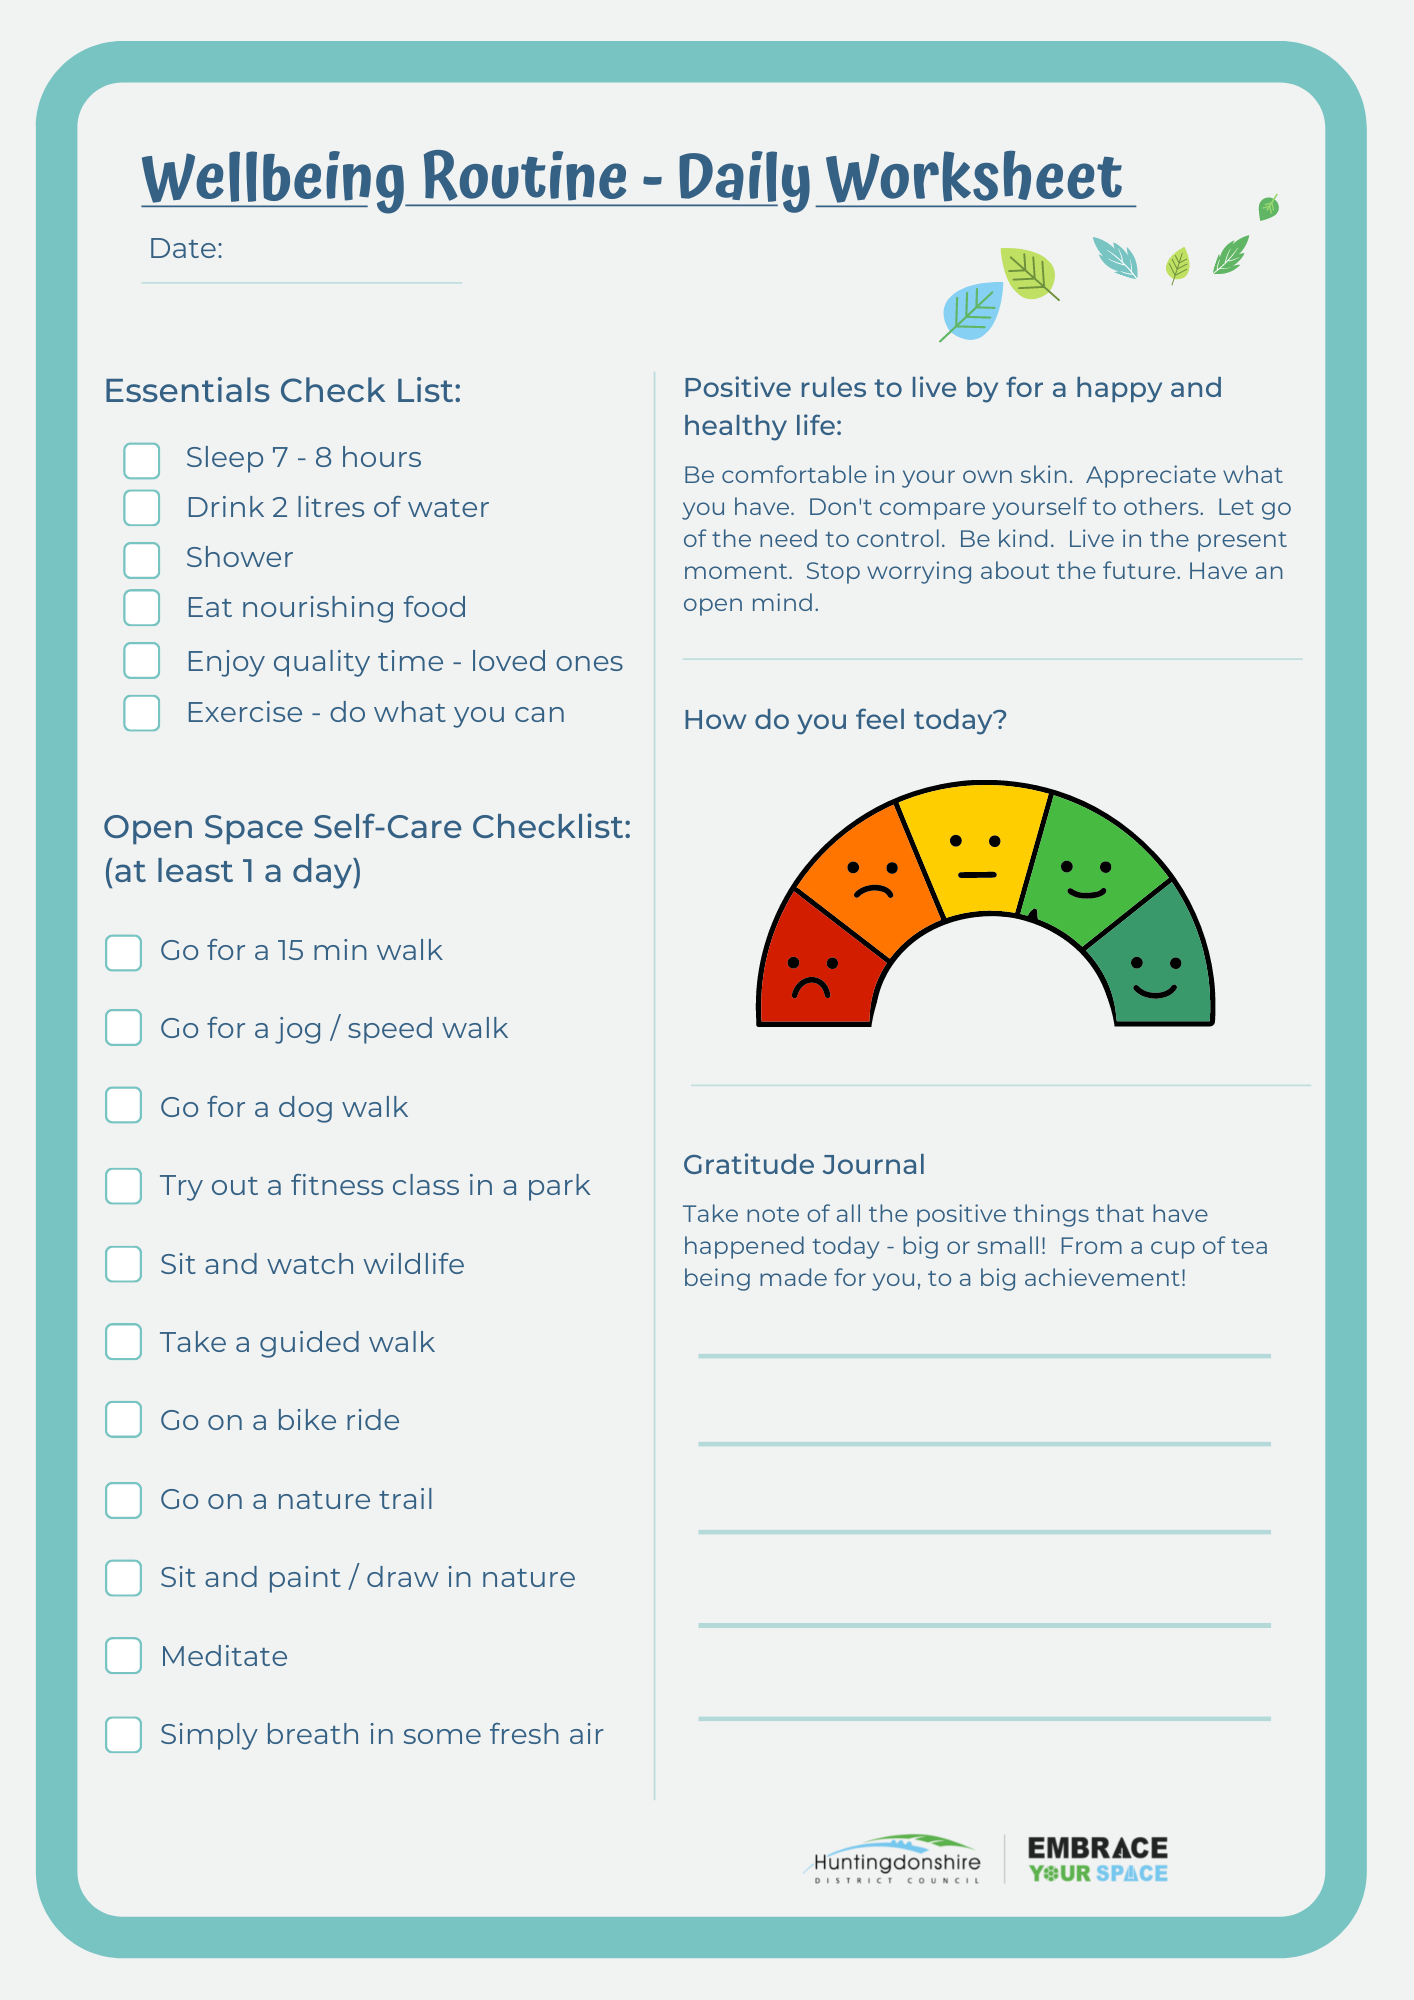 Wellbeing routine - daily checklist